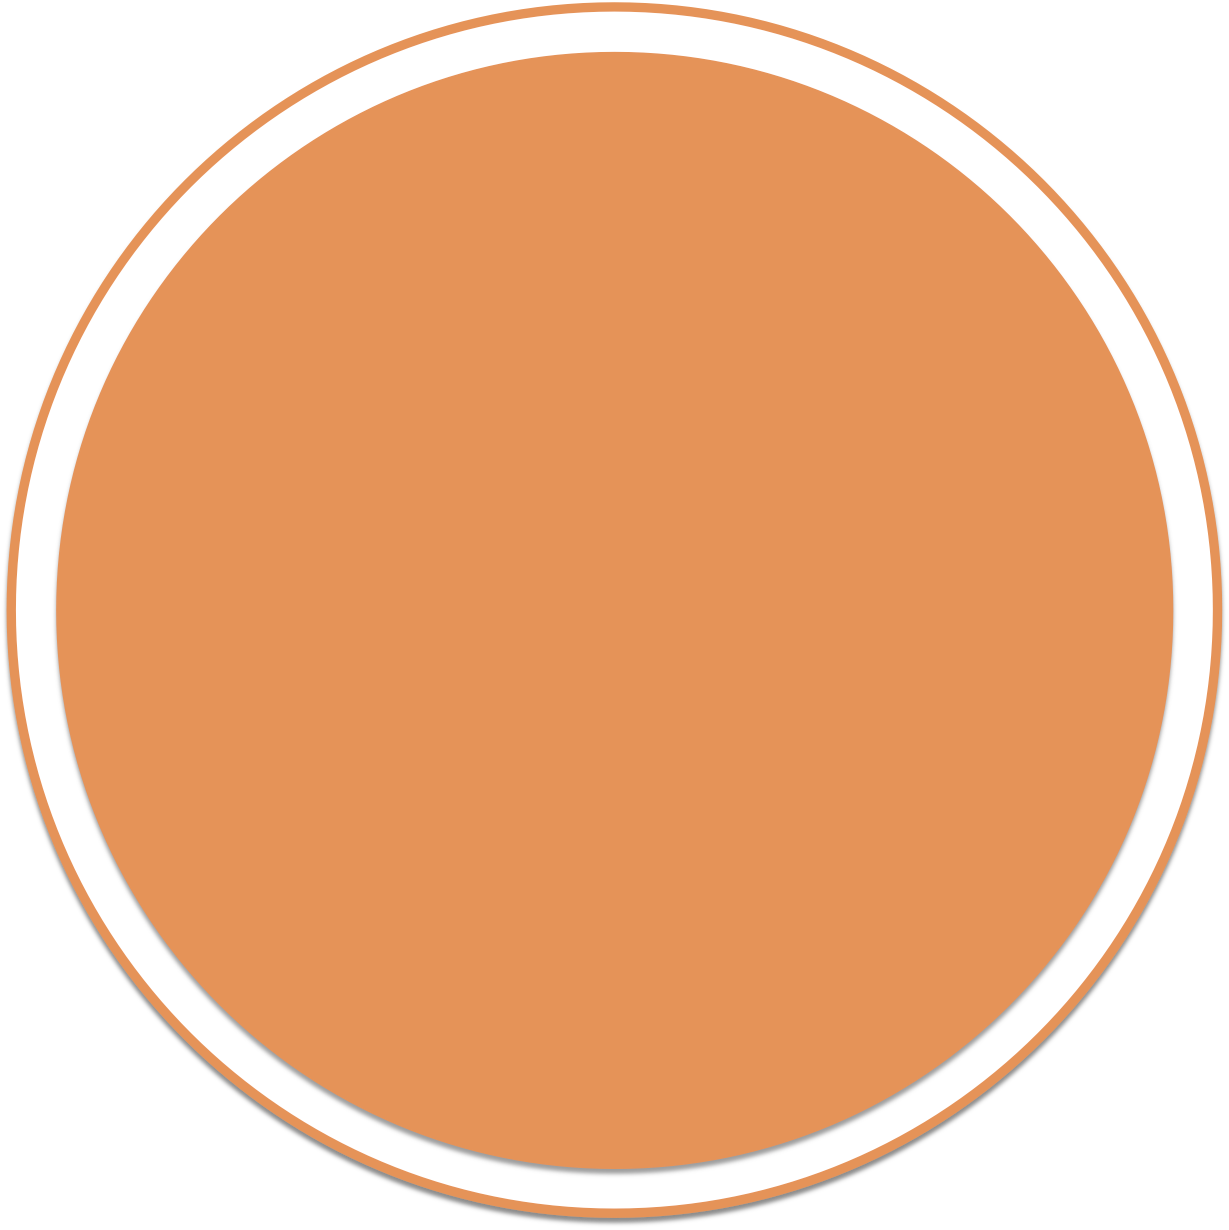 Blank Orange Circle Graphic PNG